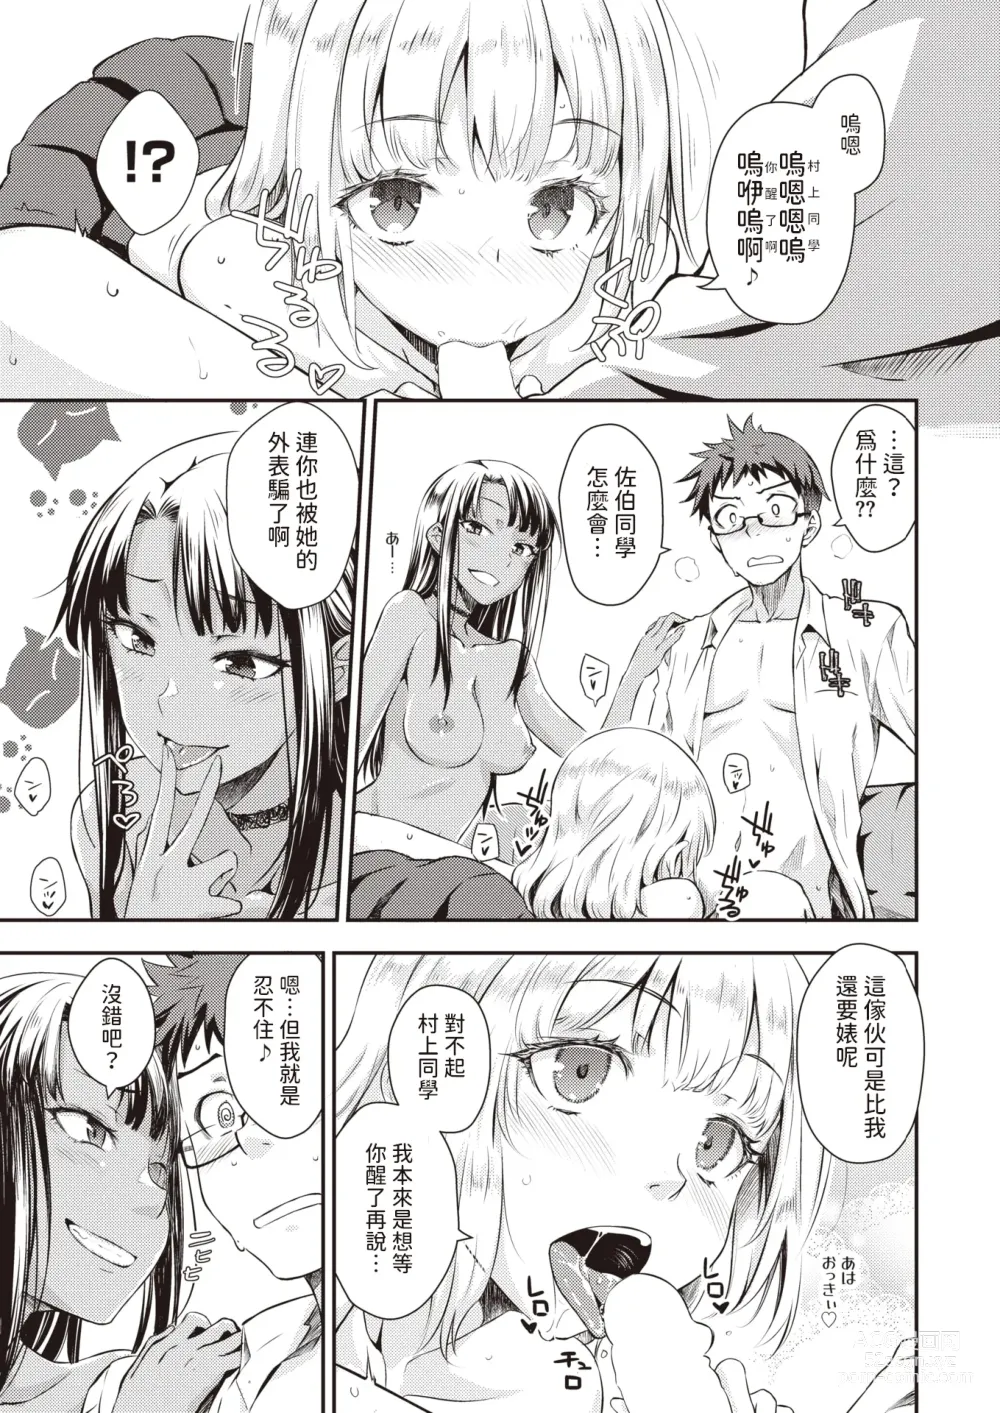 Page 7 of manga Oshiete Ageru